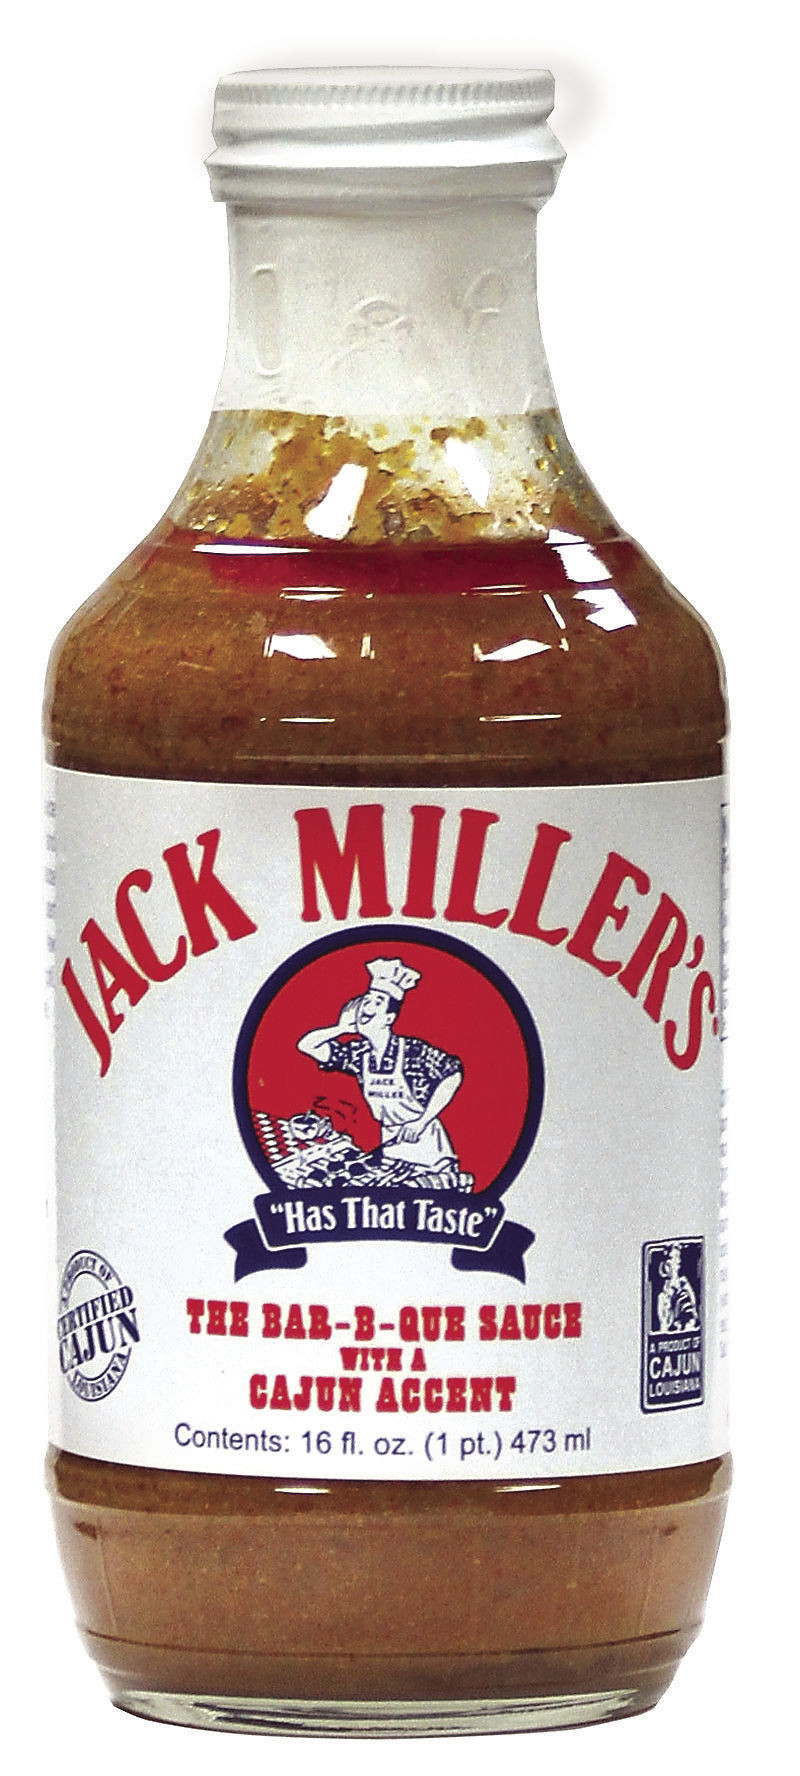 Jack Miller Bbq Sauce
 Jack Miller’s Bar B Que Sauce adds Cajun accent to